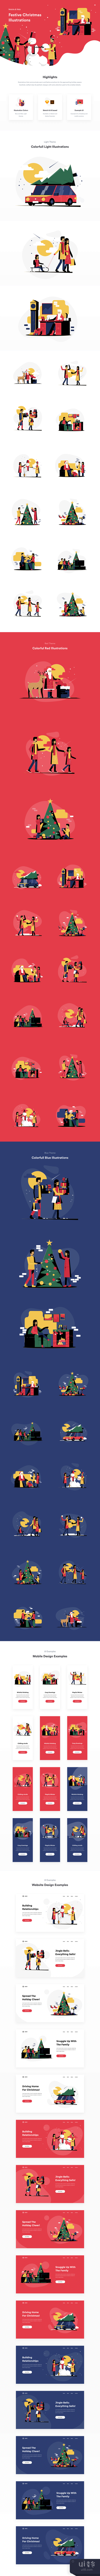 节日的圣诞插图 (Festive Christmas Illustrations)插图